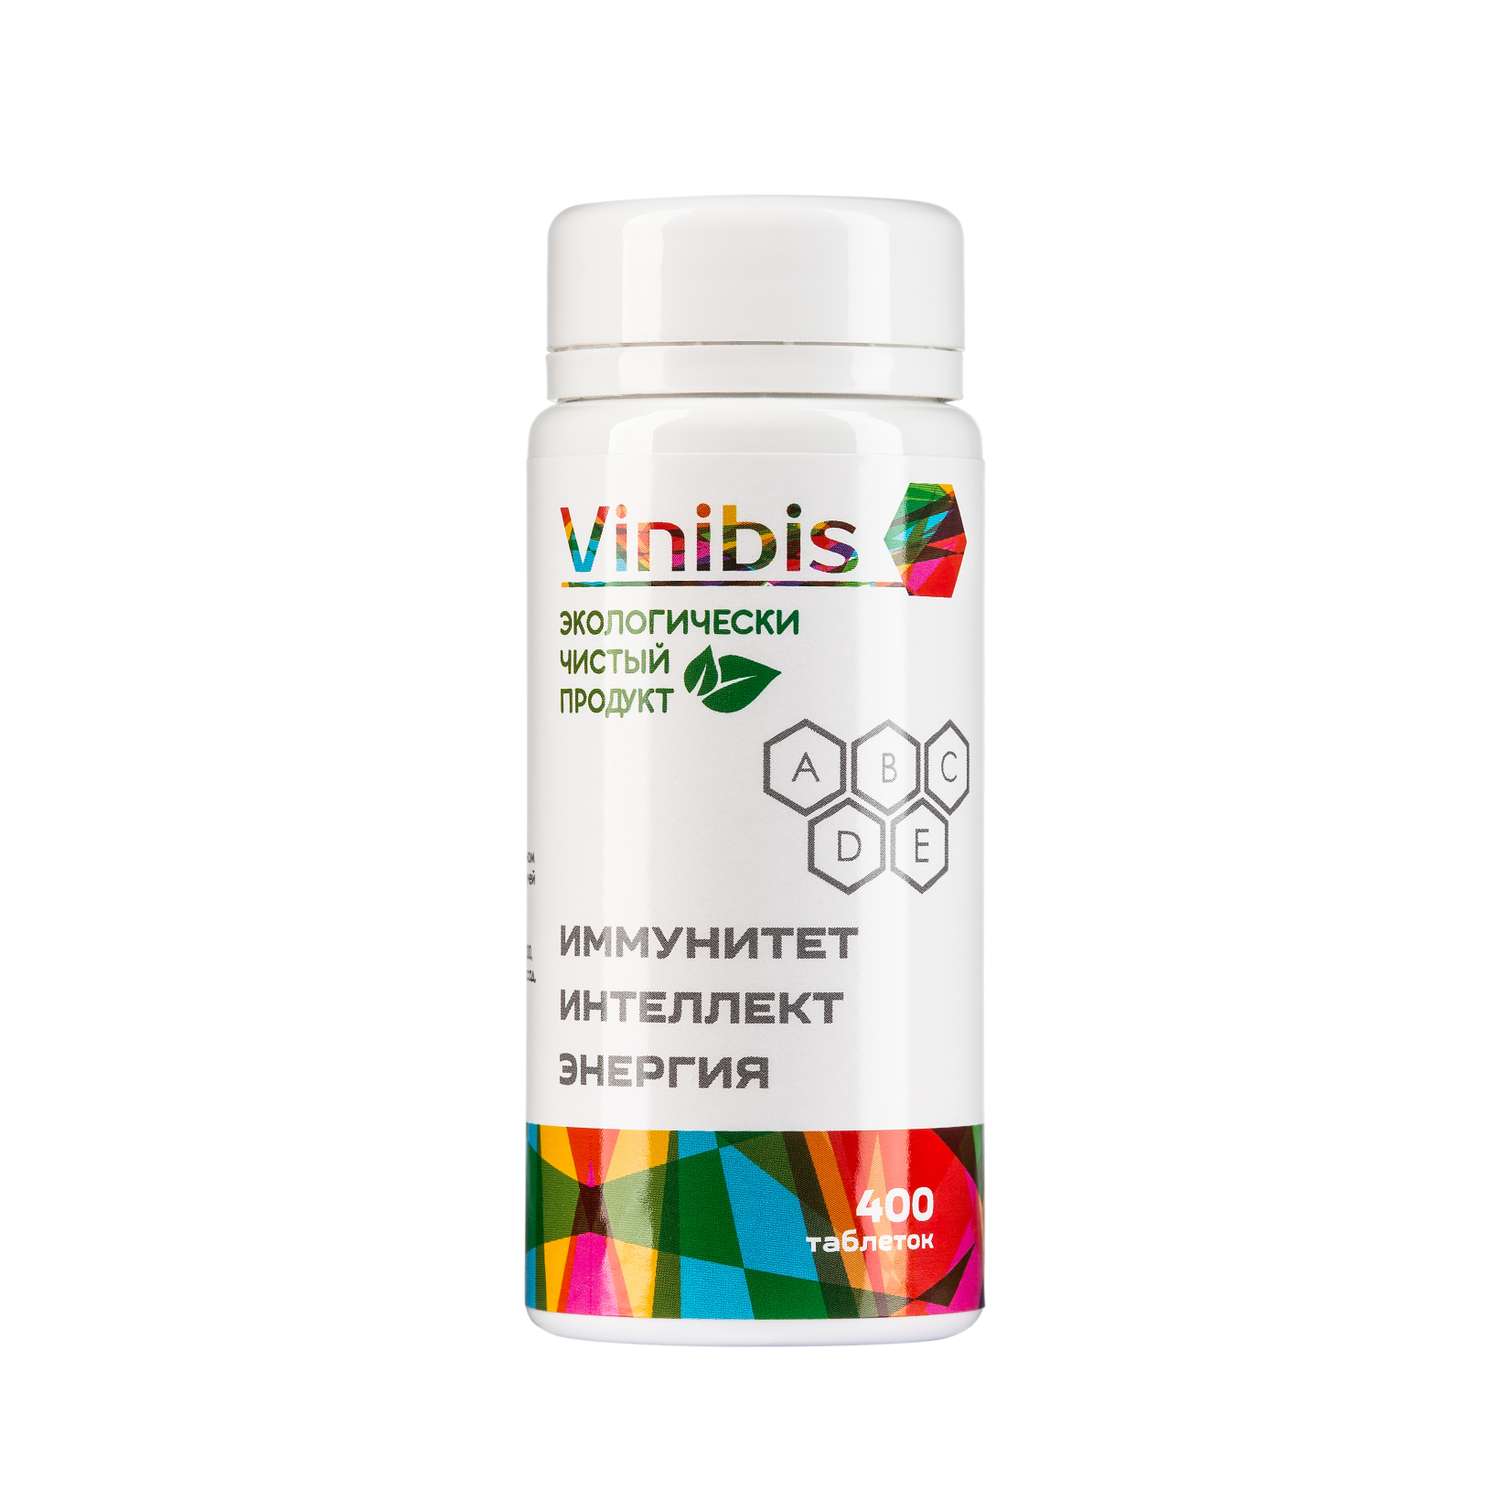 Витаминно-минеральный комплекс Vinibis для детей взрослых беременных и кормящих 400 таблеток - фото 1